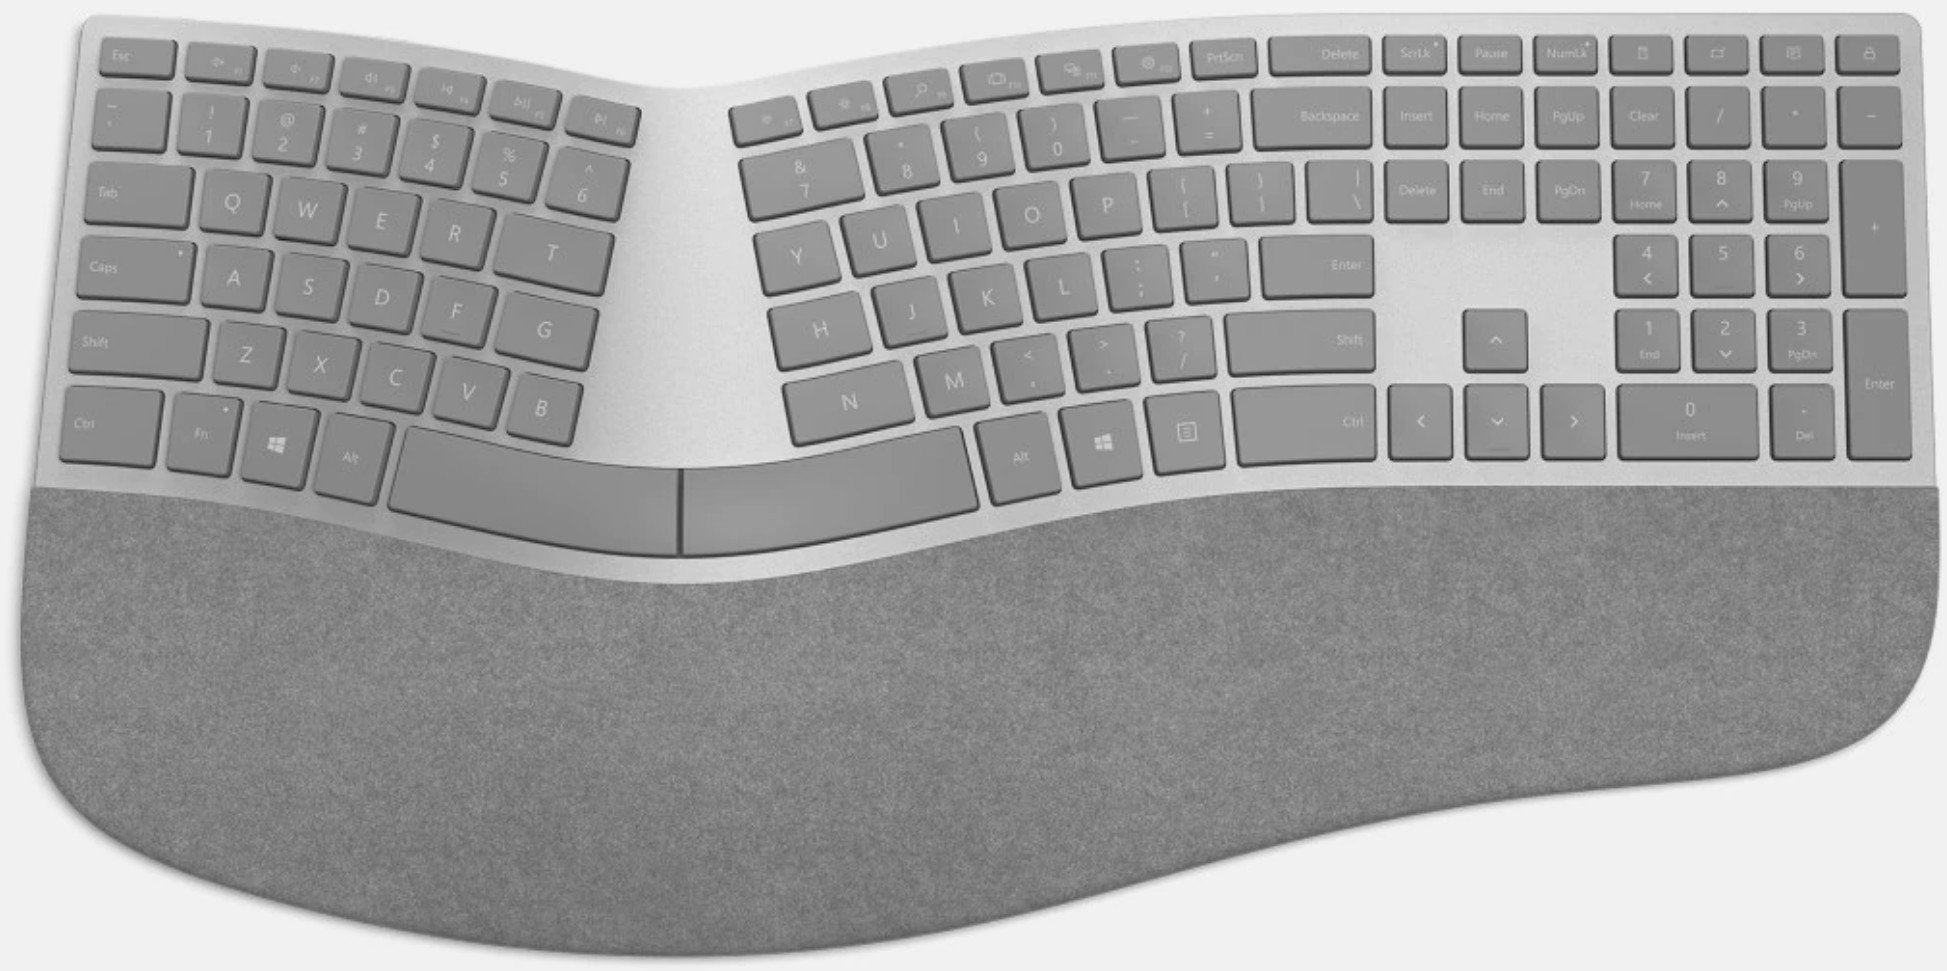 surface ergonomic keyboard crop 01